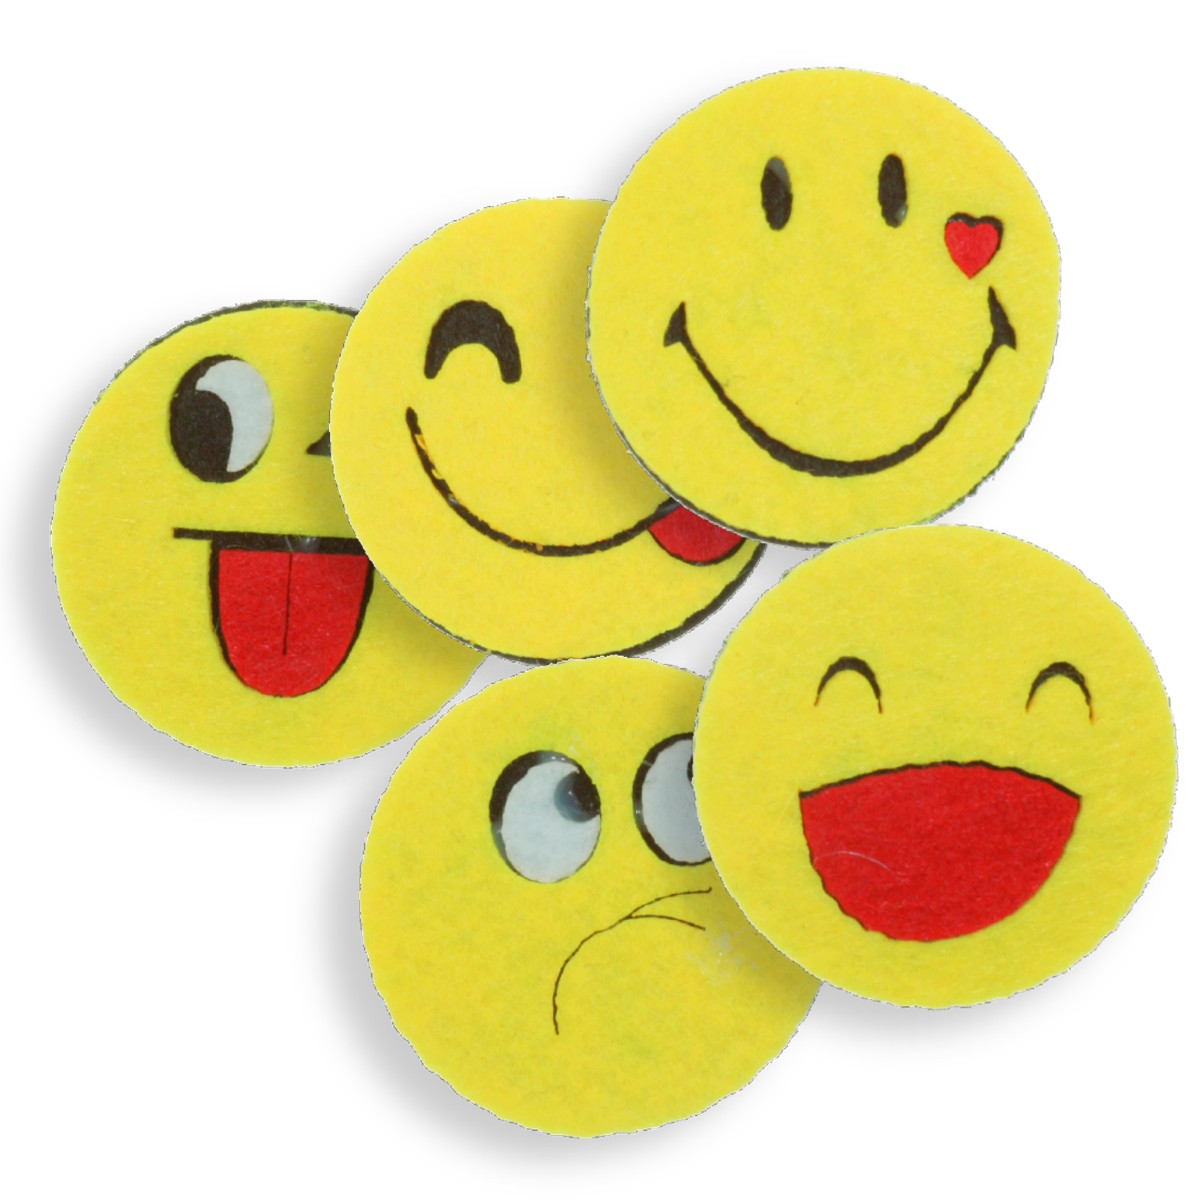 Smiley face pasla galben cu negru diverse modele 5cm 5 set